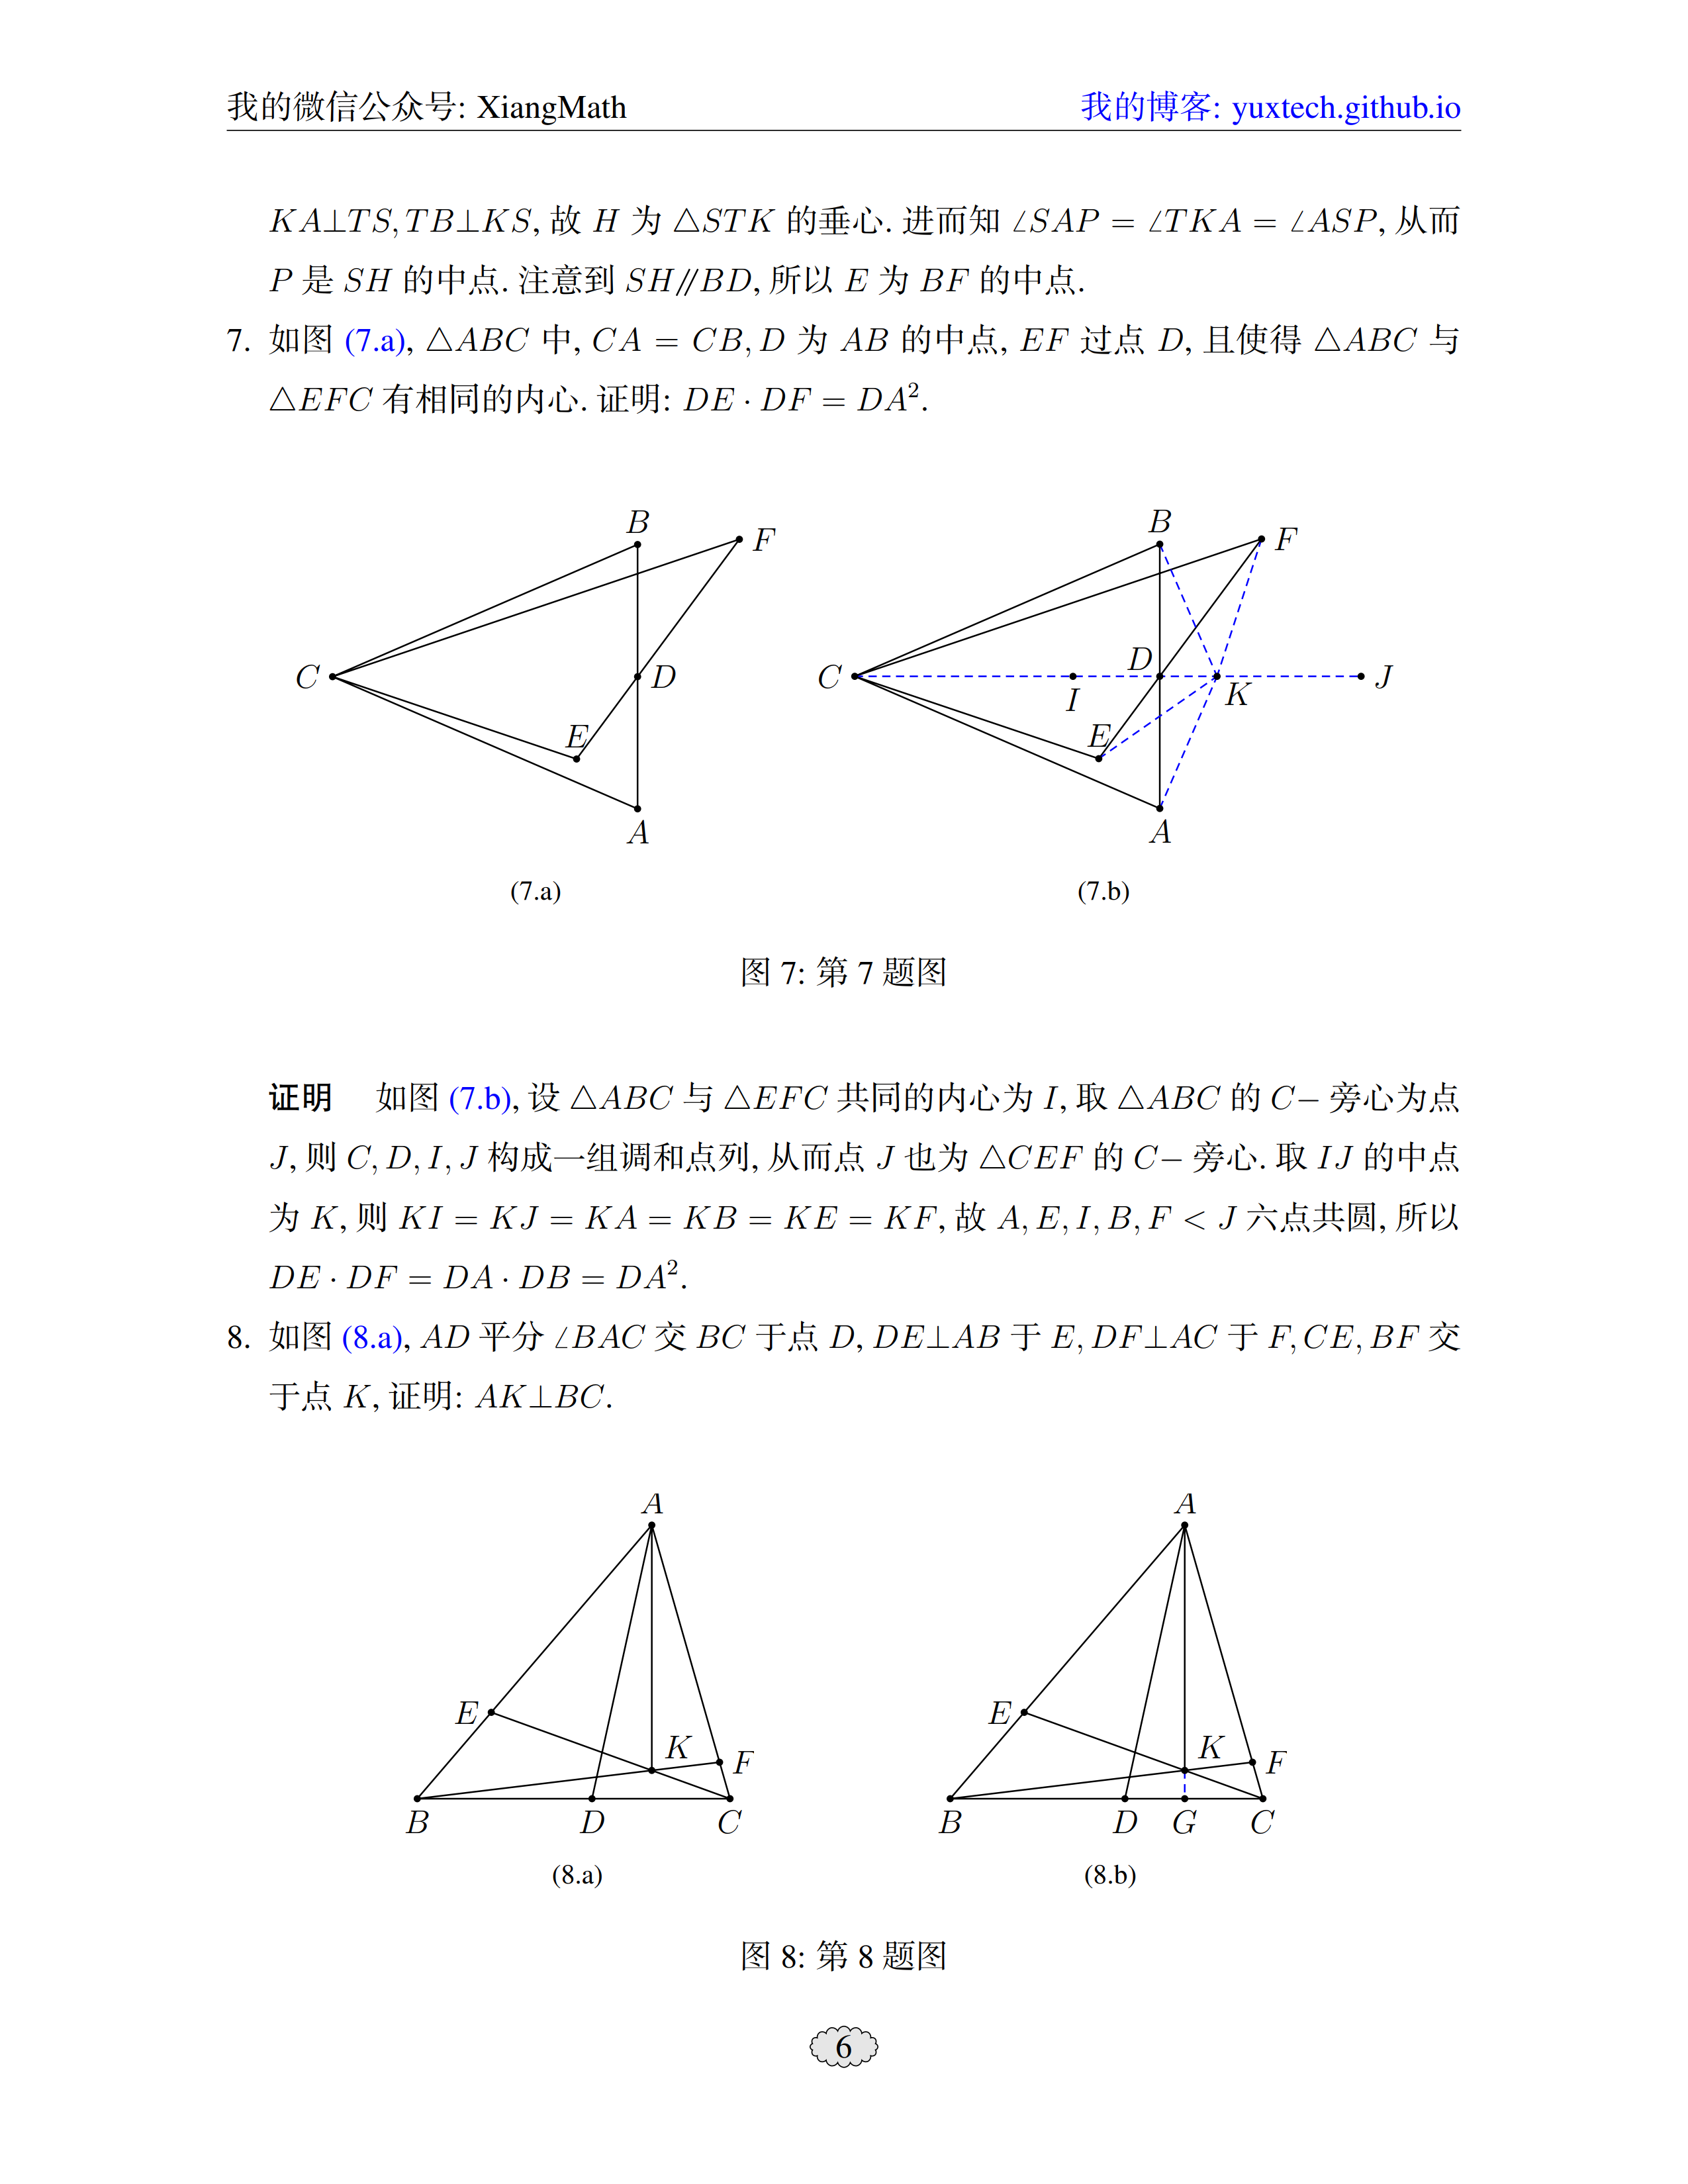 用tkz-euclide包整理的平面几何习题集 - 向老师